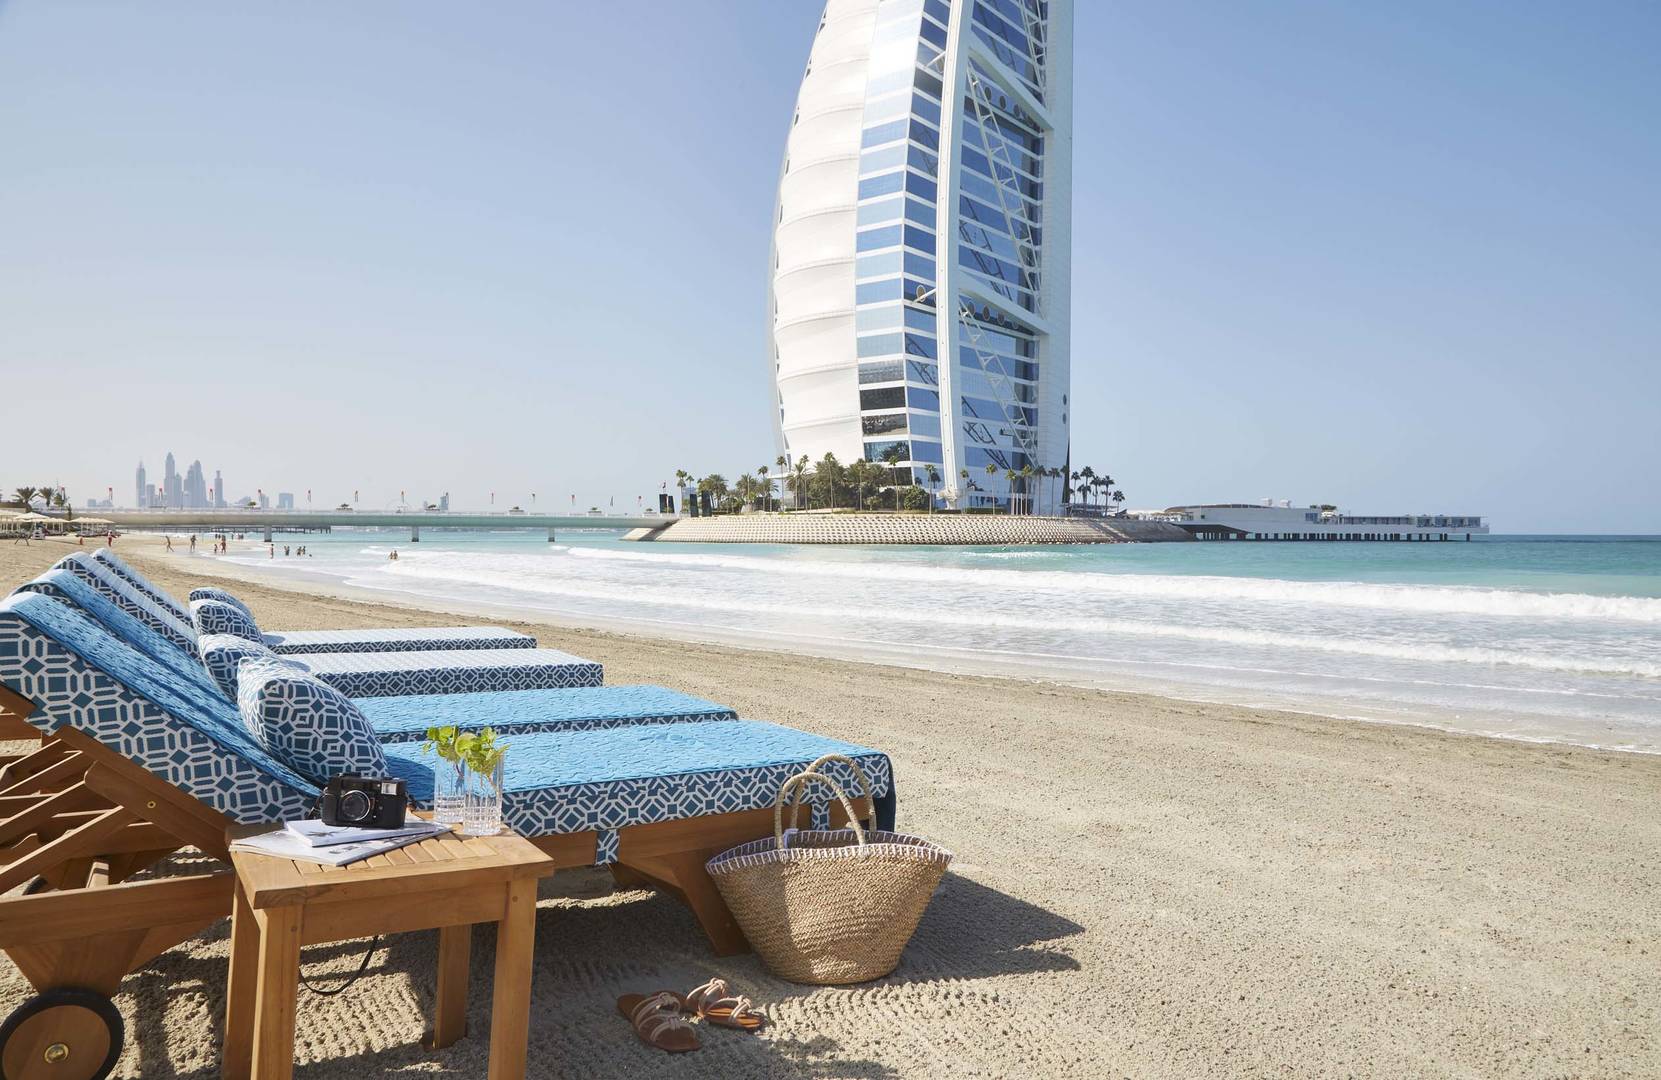 The beach at Jumeirah Beach Hotel